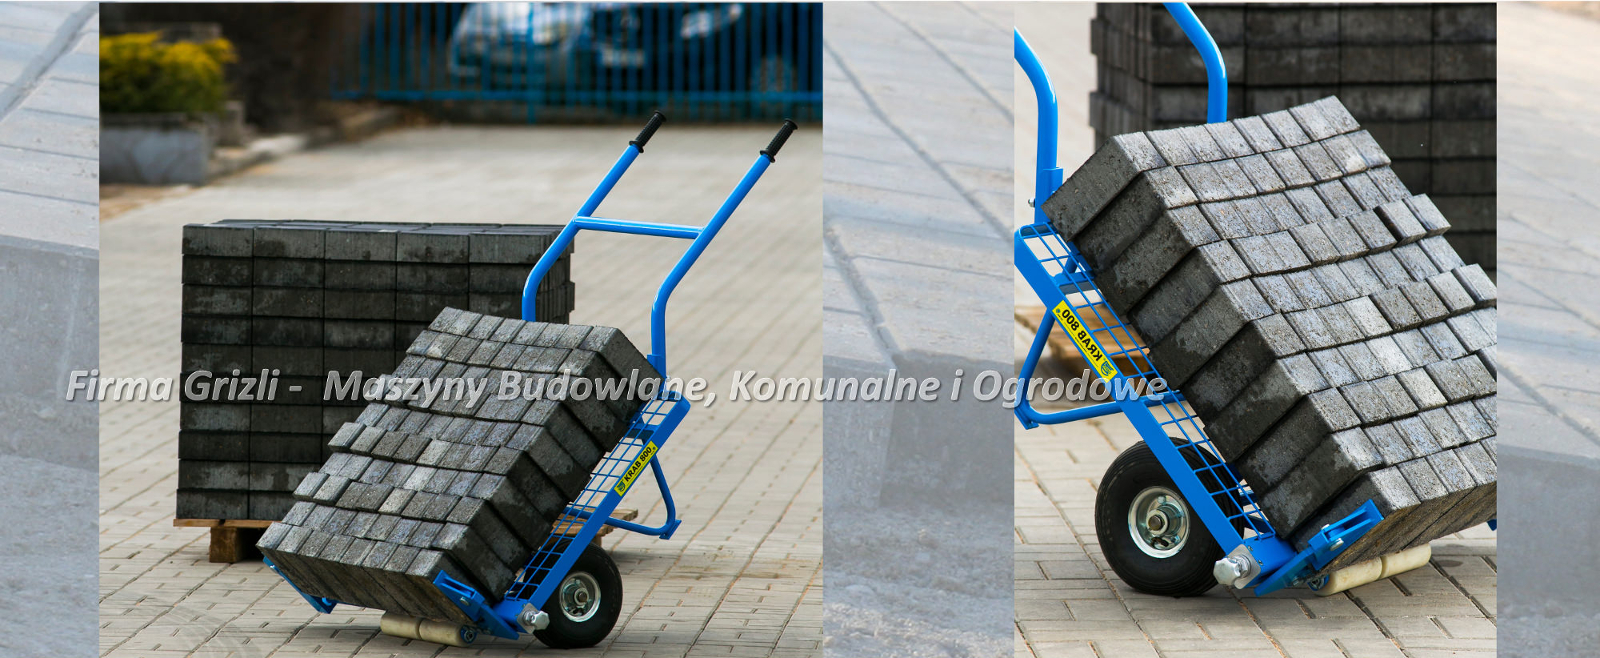 Krab 800 - wózek brukarski firmy Jazon - do przewożenia kostki brukowej z palety do miejsca układania